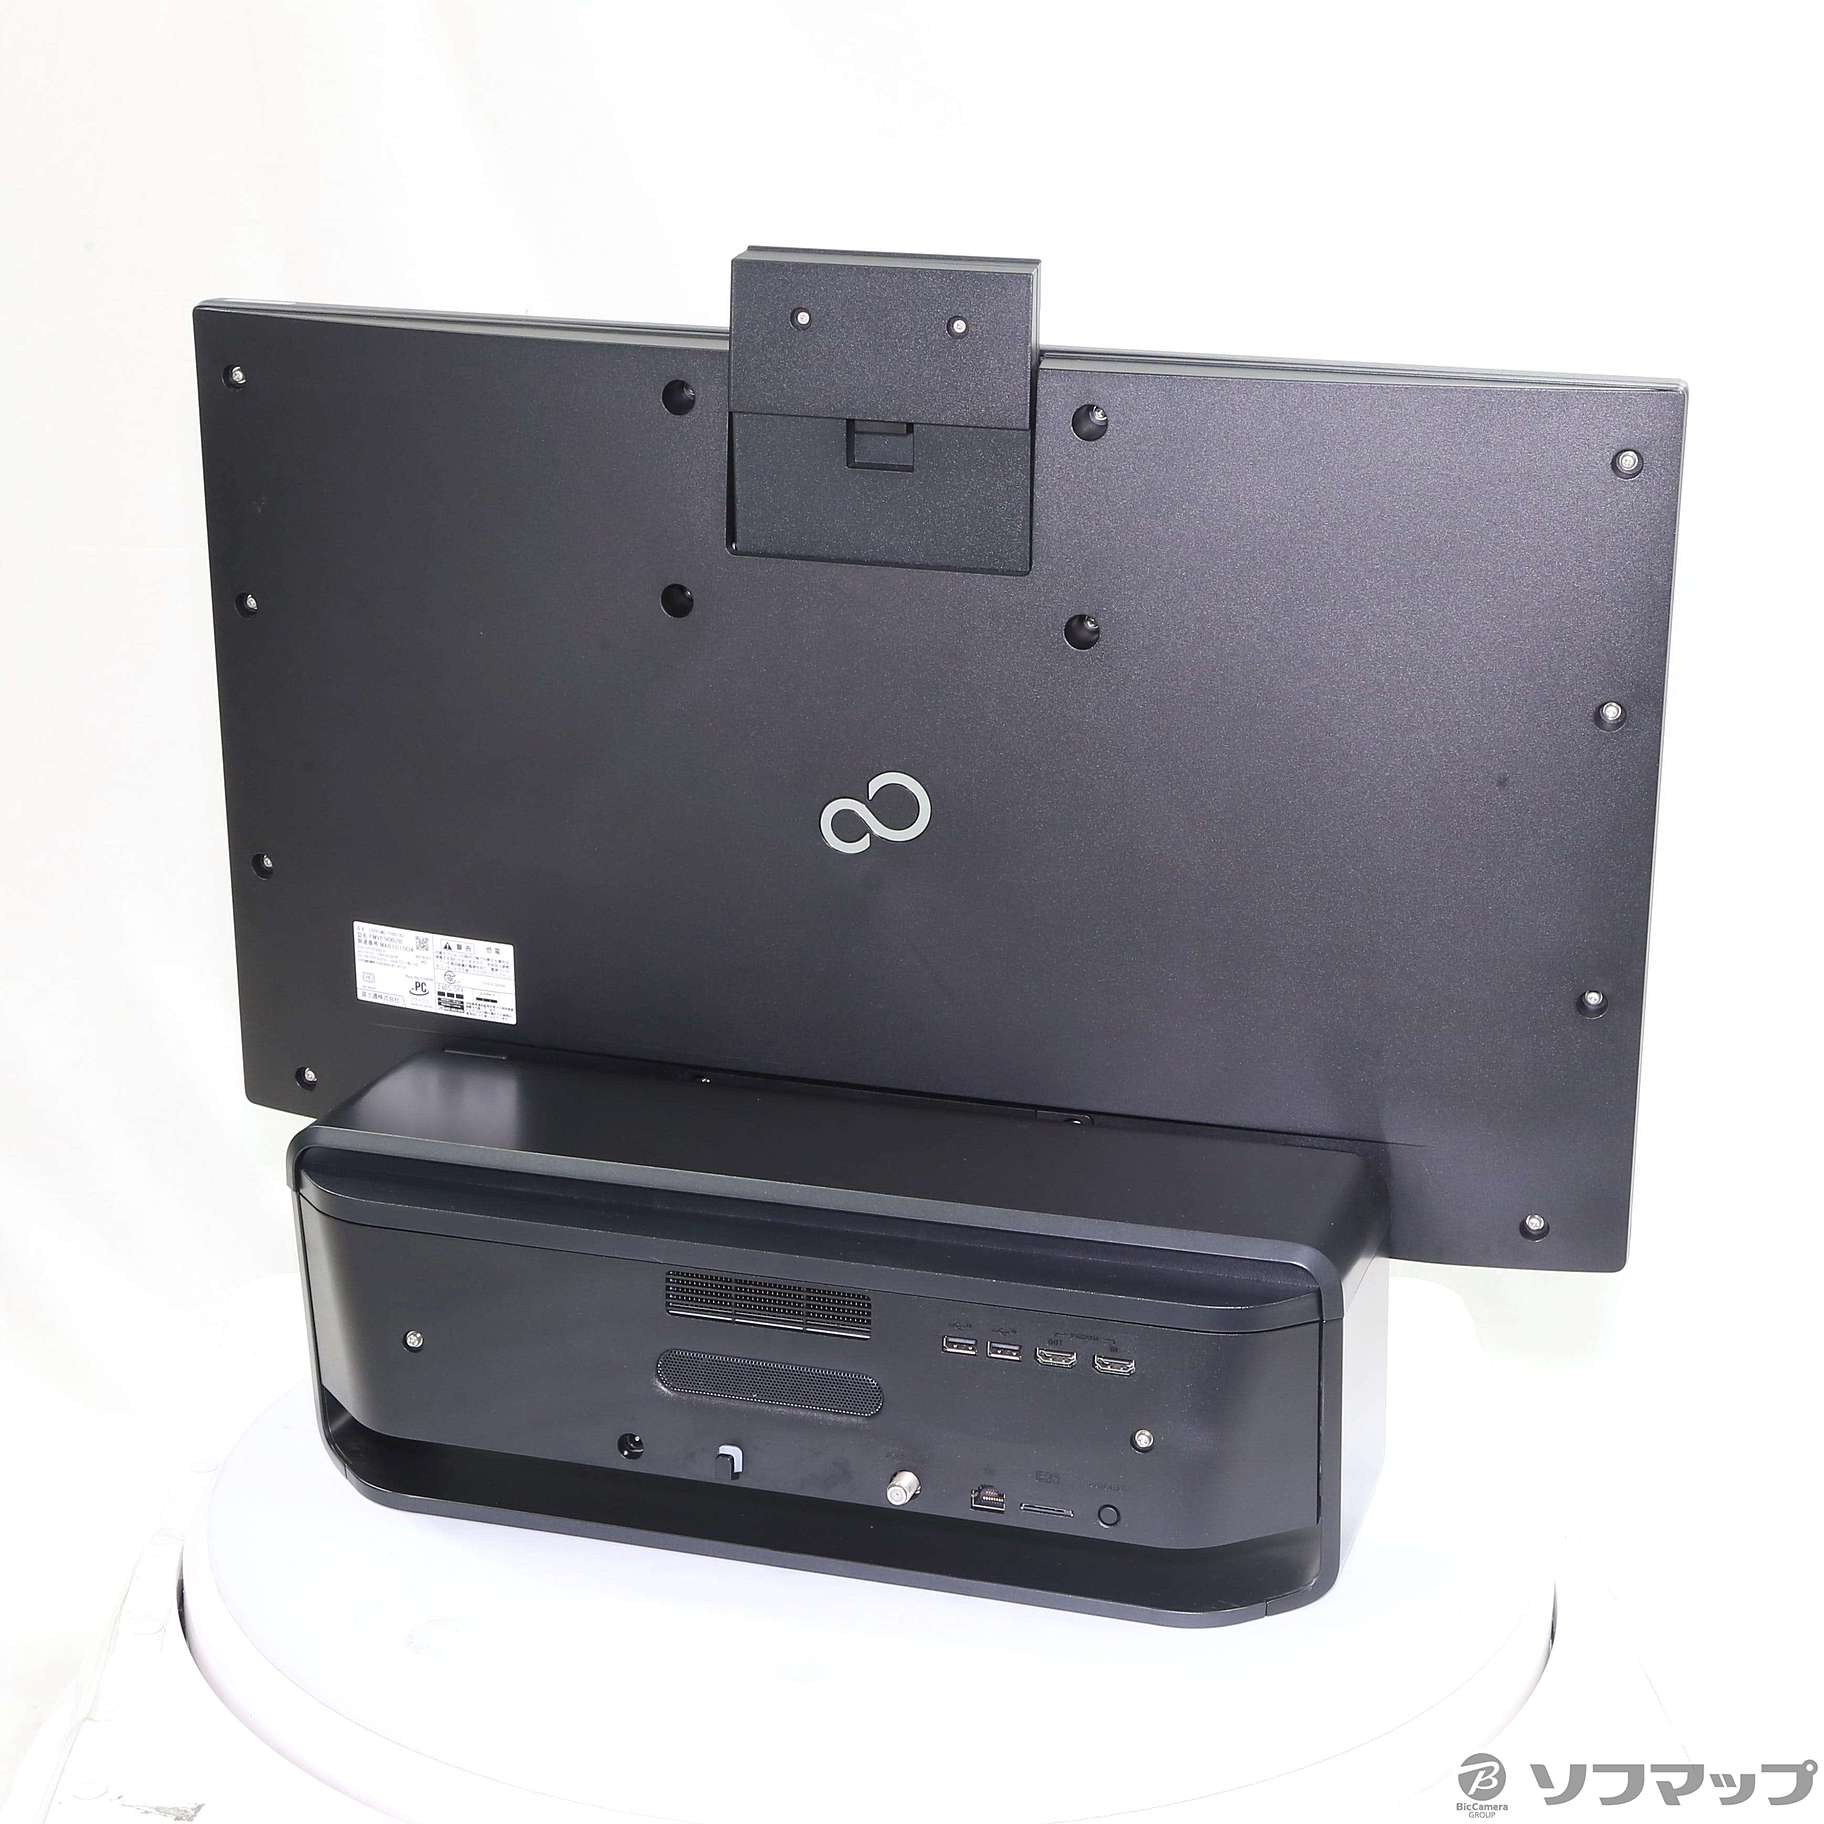 富士通 FMVF90B2B　デスクトップPC i7